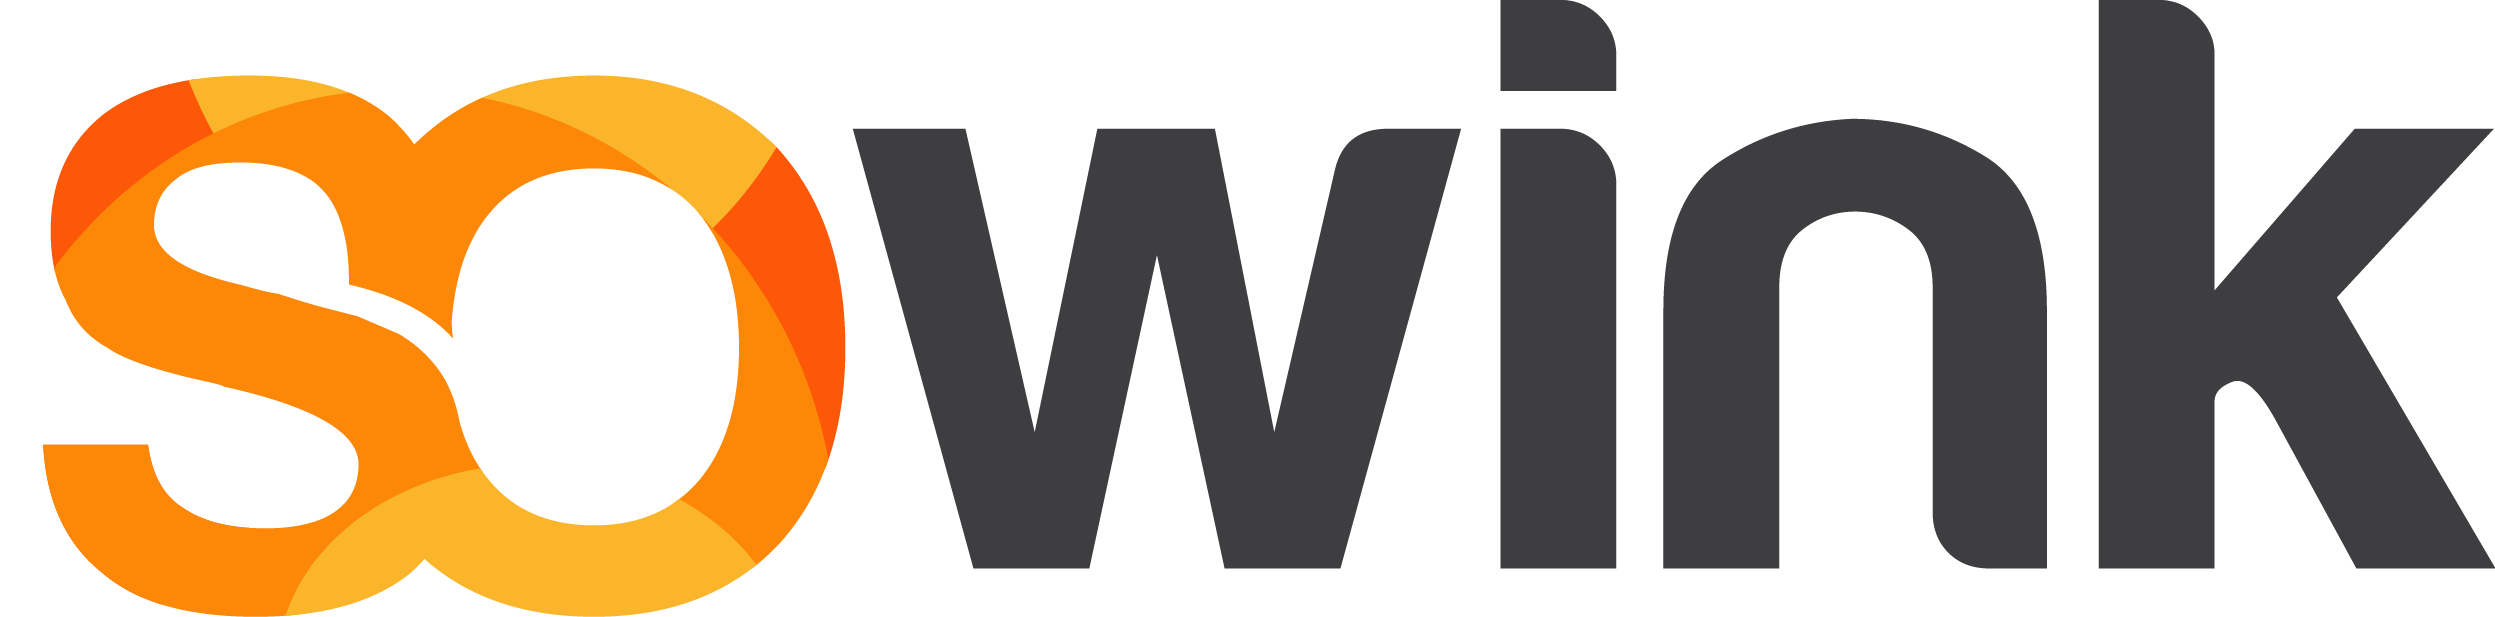 Sowink - Réseau d'agences web